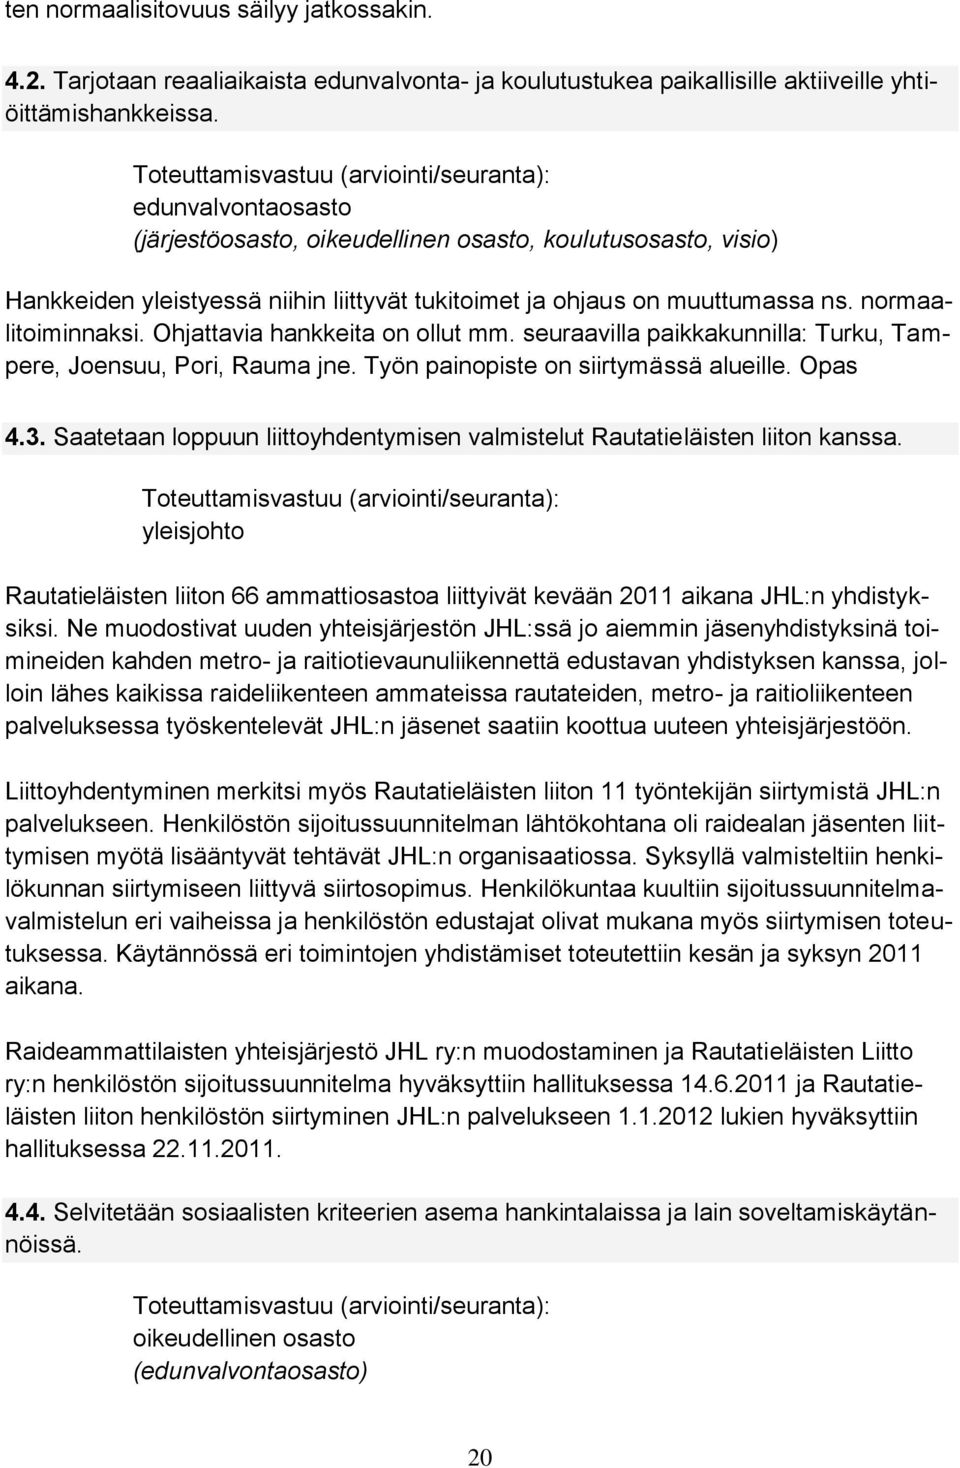 Ohjattavia hankkeita on ollut mm. seuraavilla paikkakunnilla: Turku, Tampere, Joensuu, Pori, Rauma jne. Työn painopiste on siirtymässä alueille. Opas 4.3.